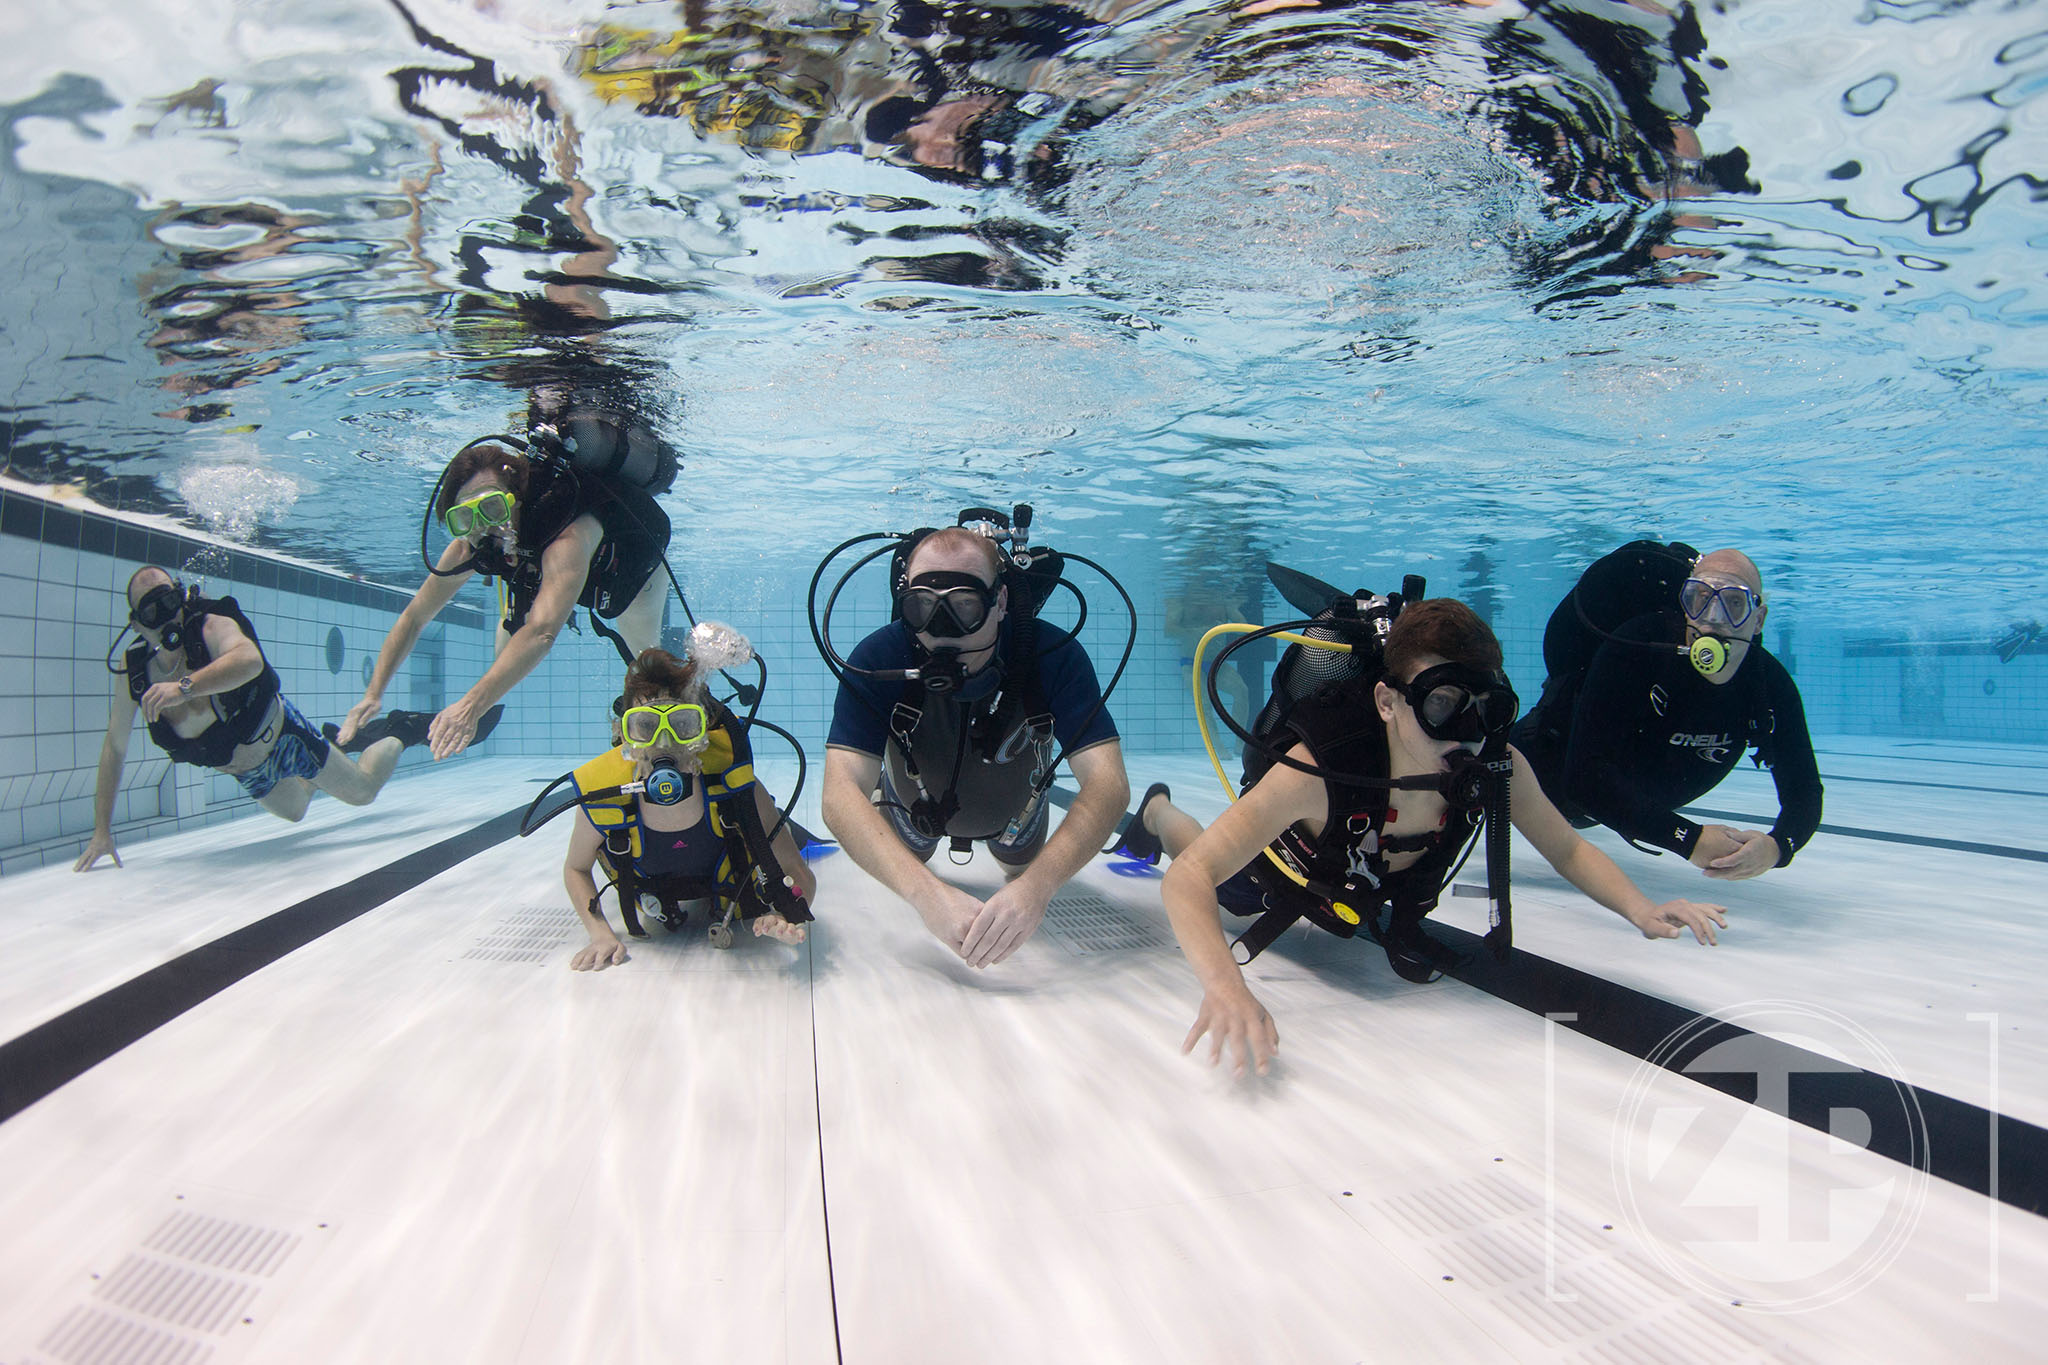 Introductieduik met Duikvereniging Albacare in zwembad IJsselslag. Leren duiken in Nederland. ©2017 Patrick van Gemert/Zutphens Persbureau